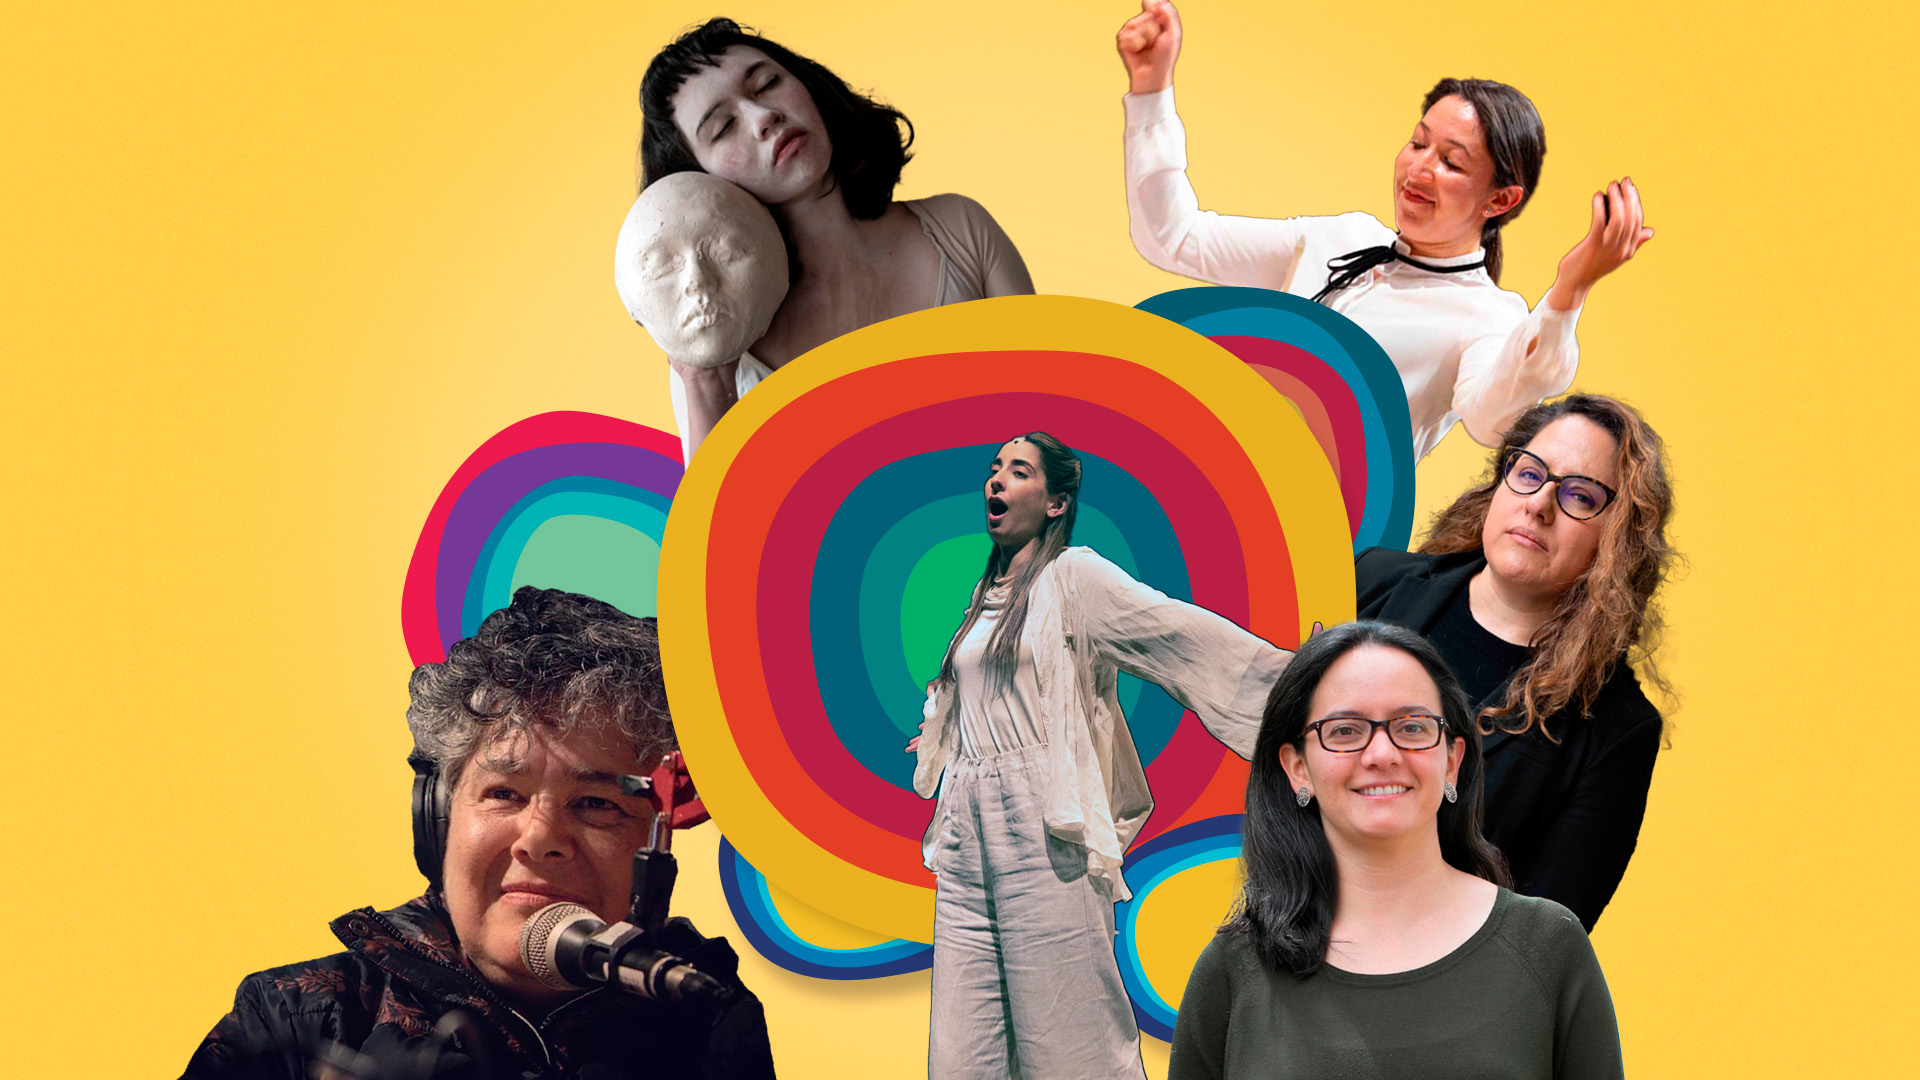 Mujeres en la música en Colombia: diversidad de visiones dentro y fuera de la academia